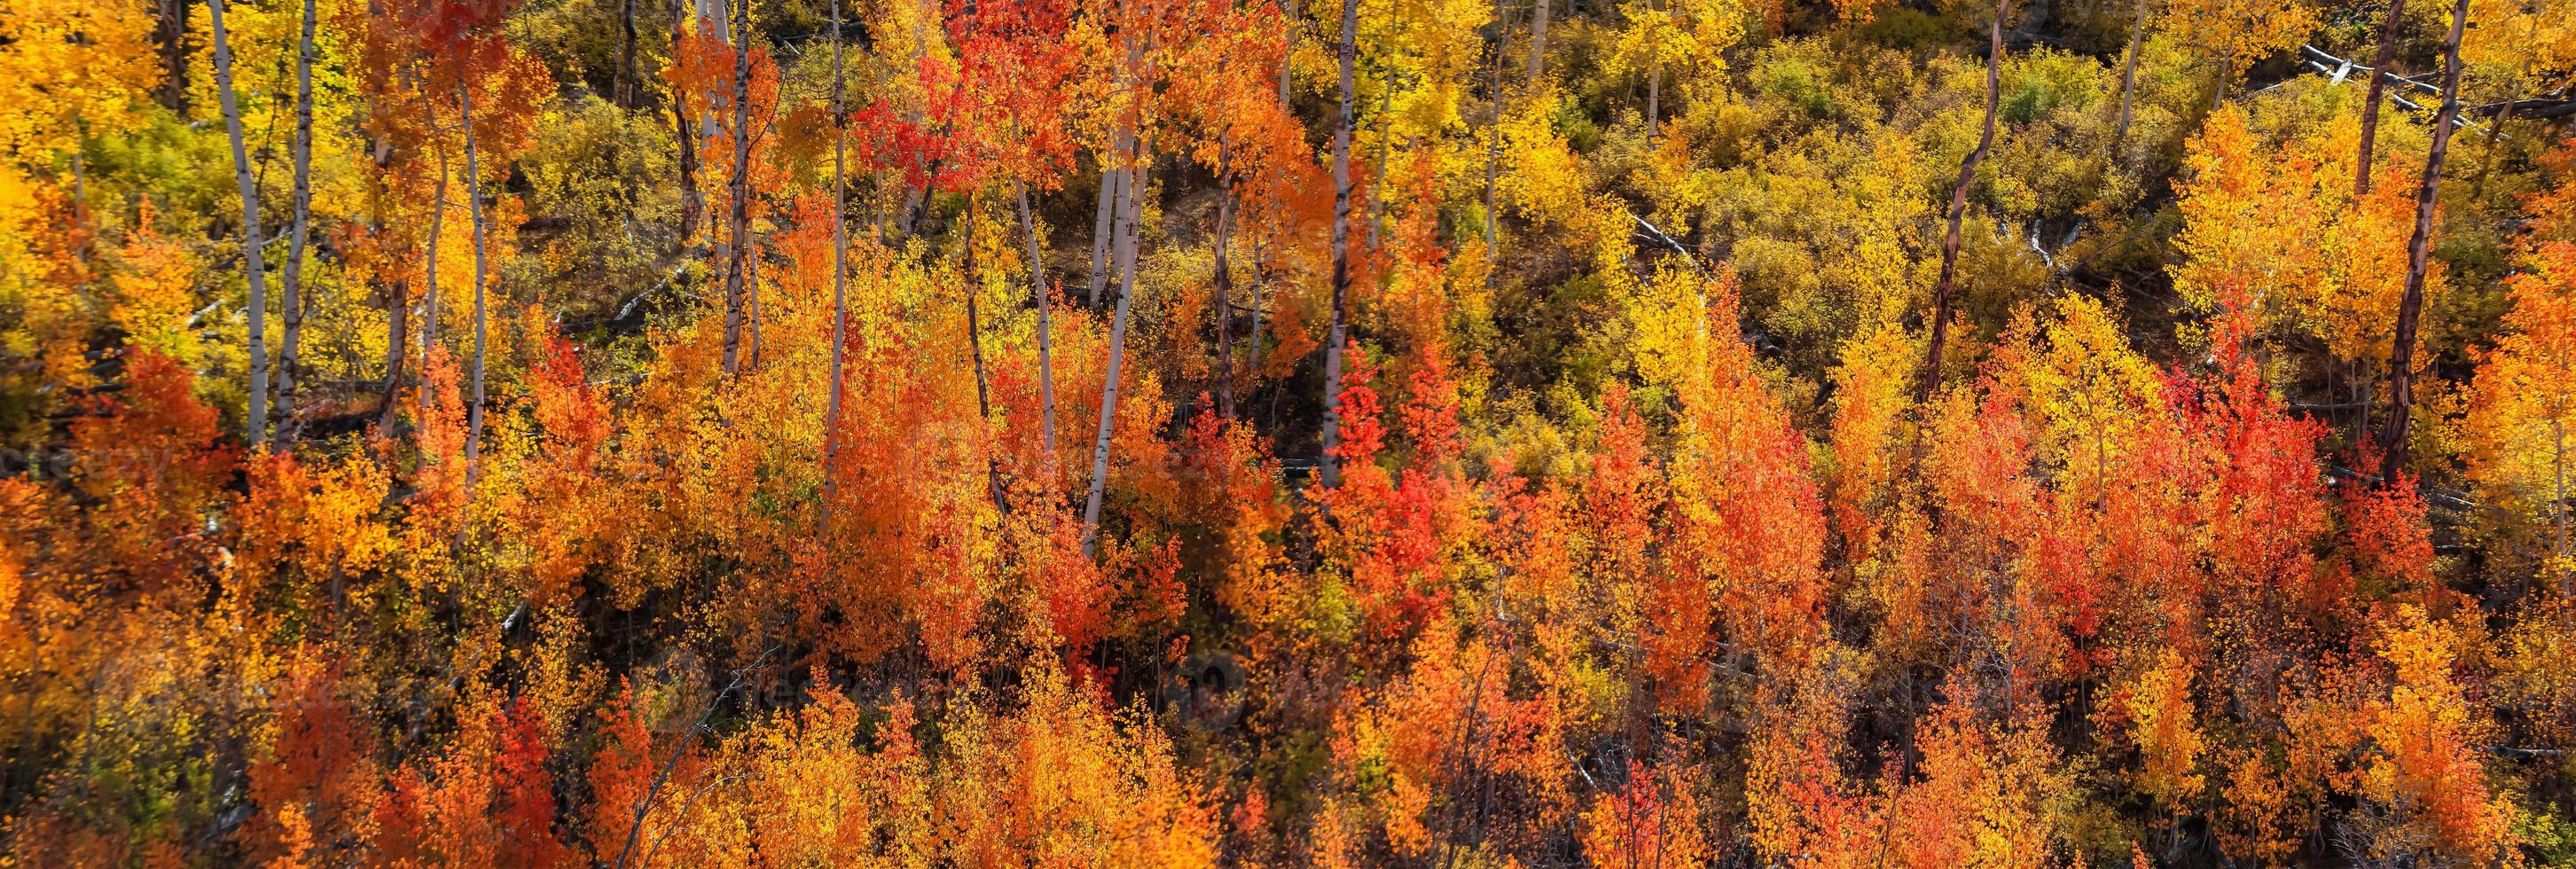 panoramautsikt över färgglada asp- och bomullsträd i Colorado foto